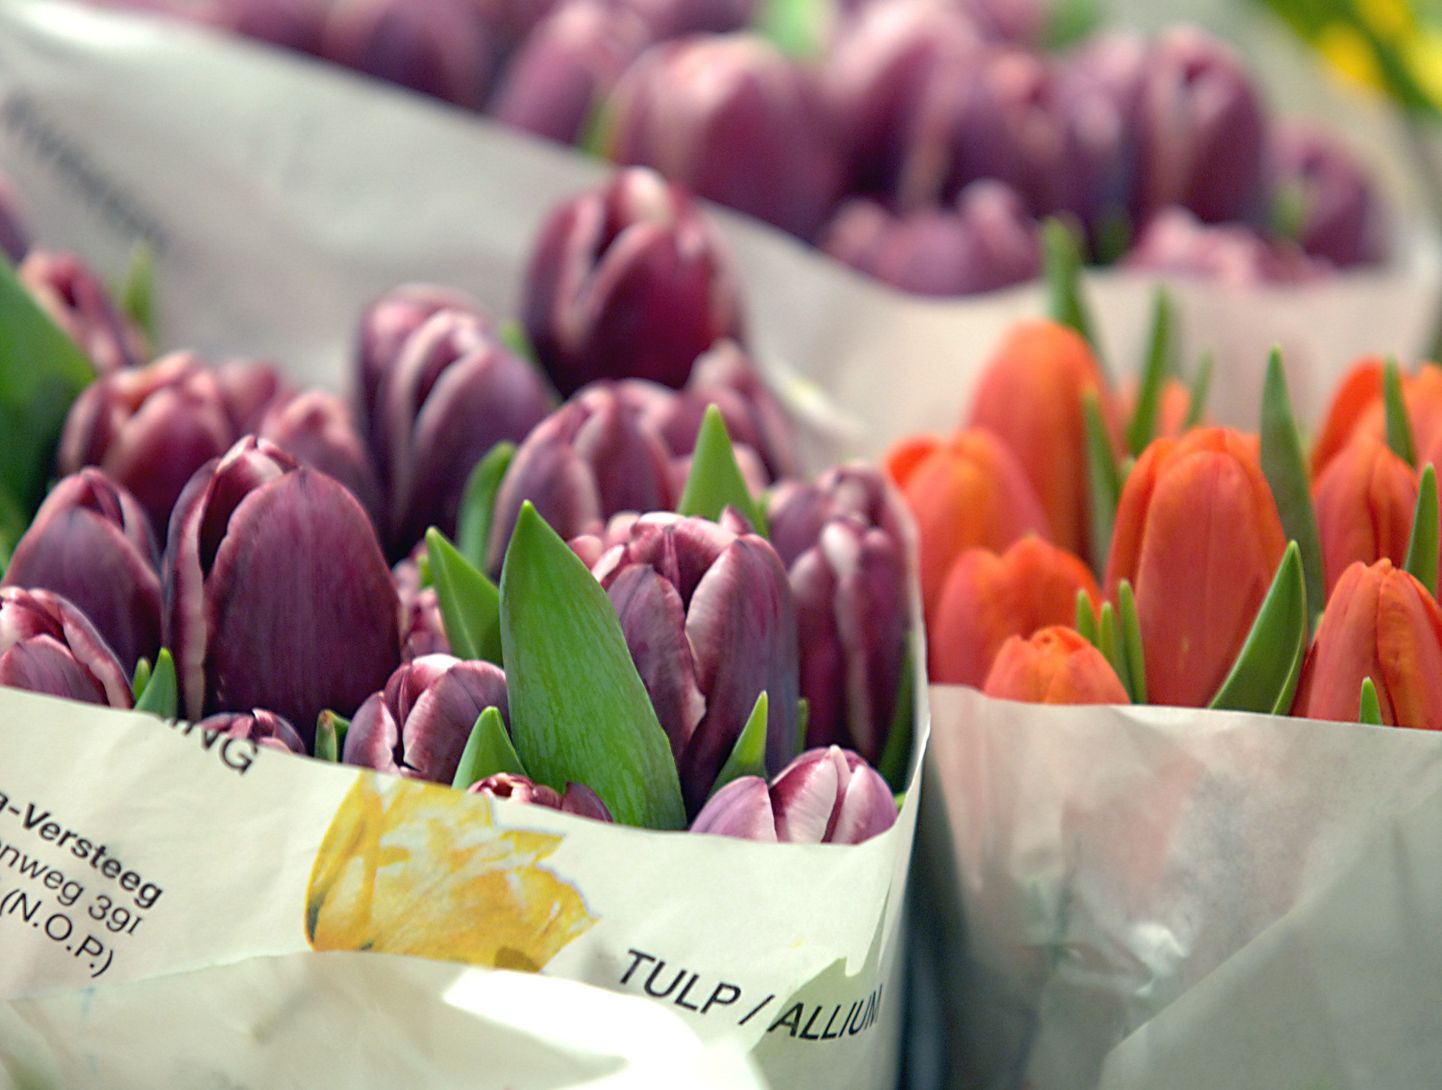 Hollandi lilleeksport on märgatavalt vähenenud